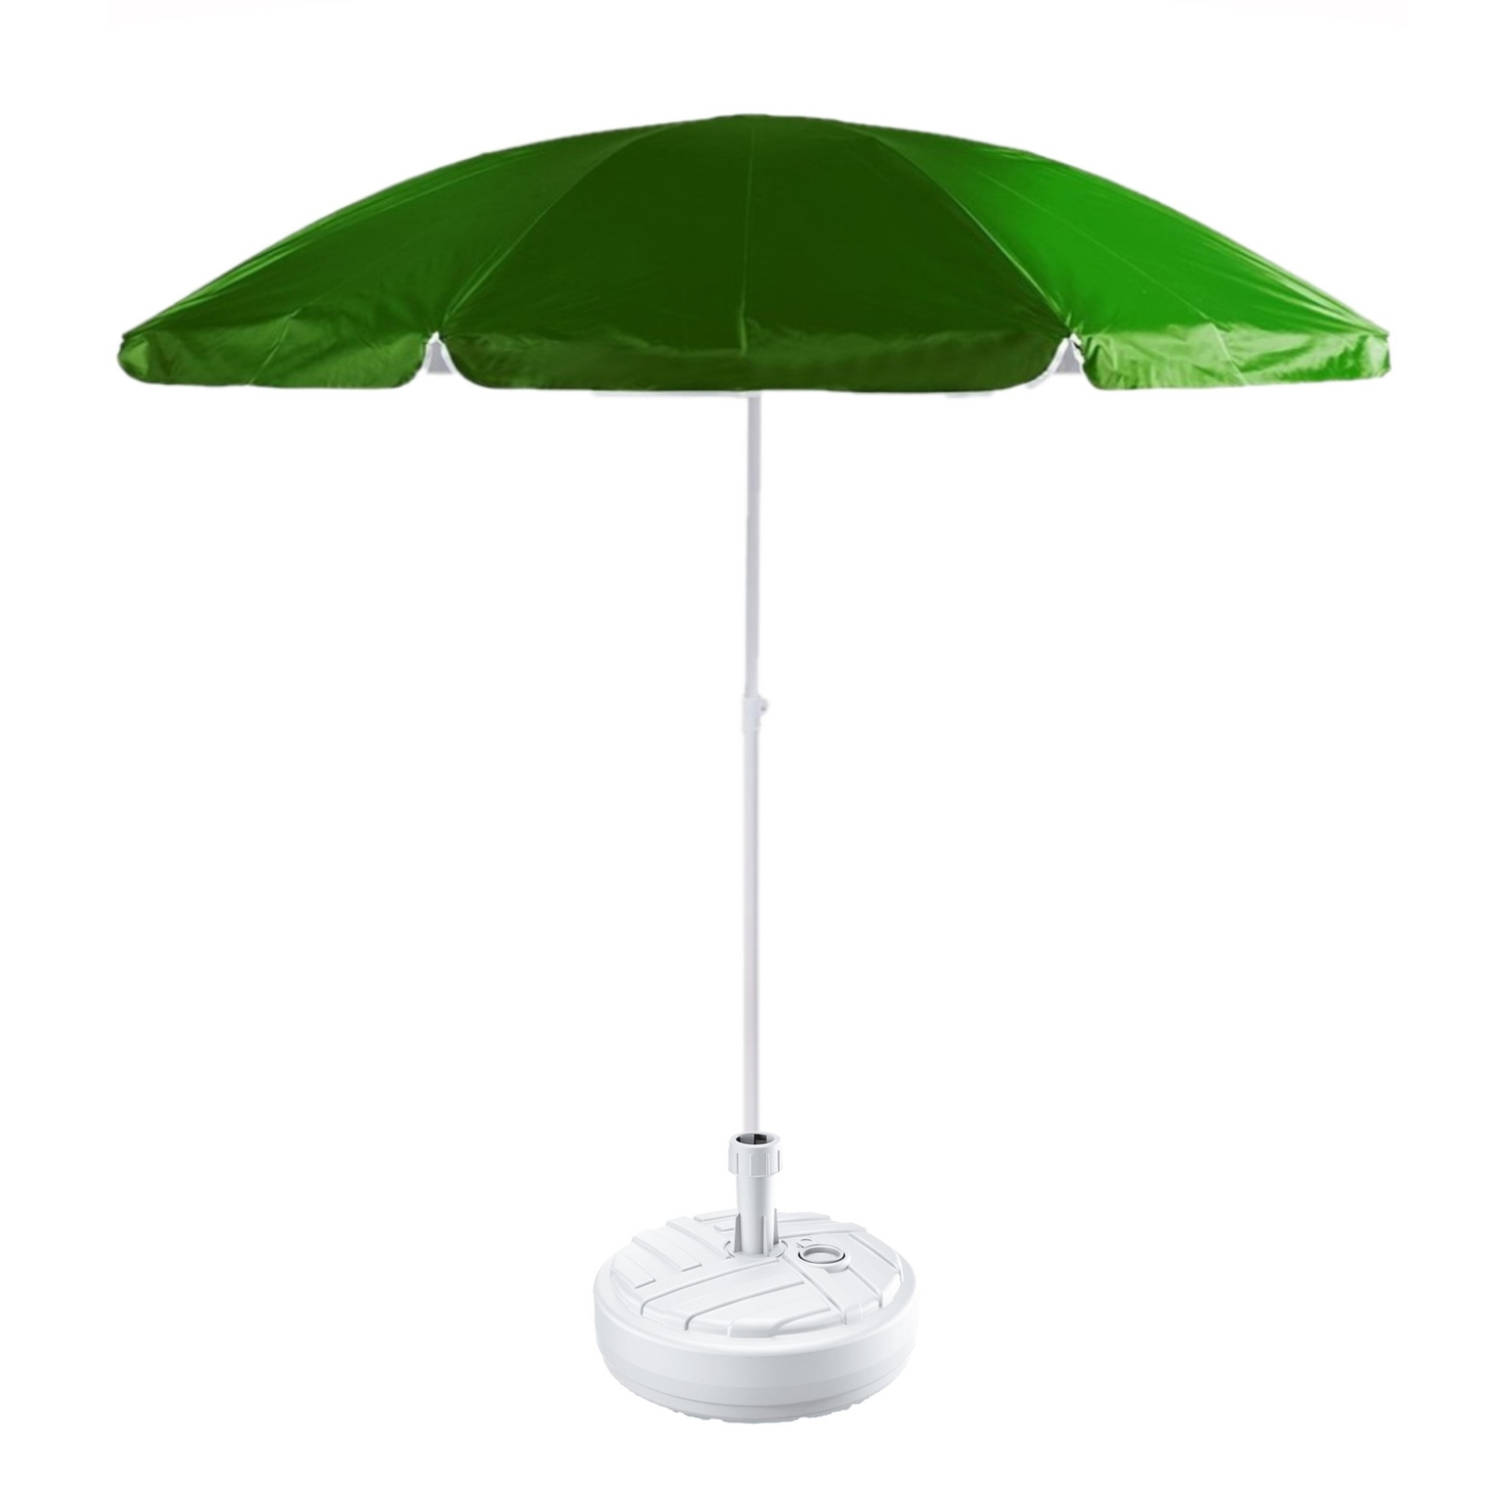 Uitwisseling waarschijnlijk Gentleman vriendelijk Groen strand/tuin basic parasol van nylon 200 cm + parasolvoet wit -  Parasols | Blokker